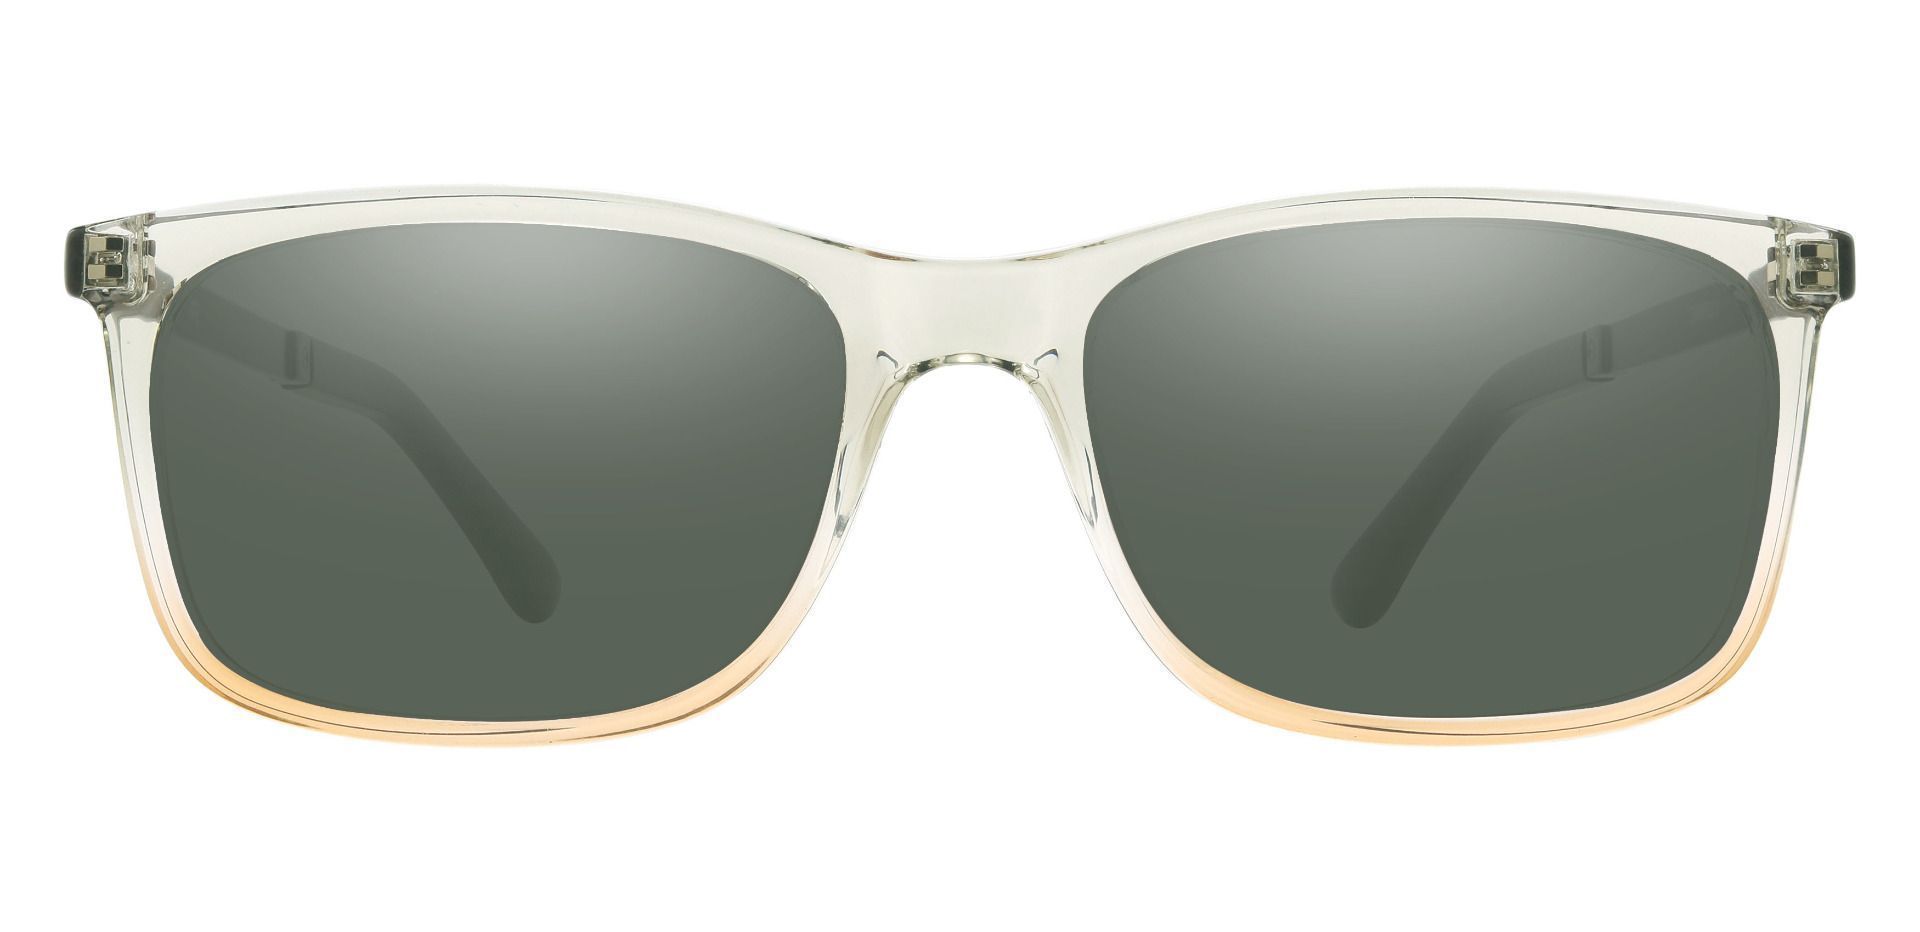 Kemper Rectangle Prescription Sunglasses - Gray Frame With Green Lenses